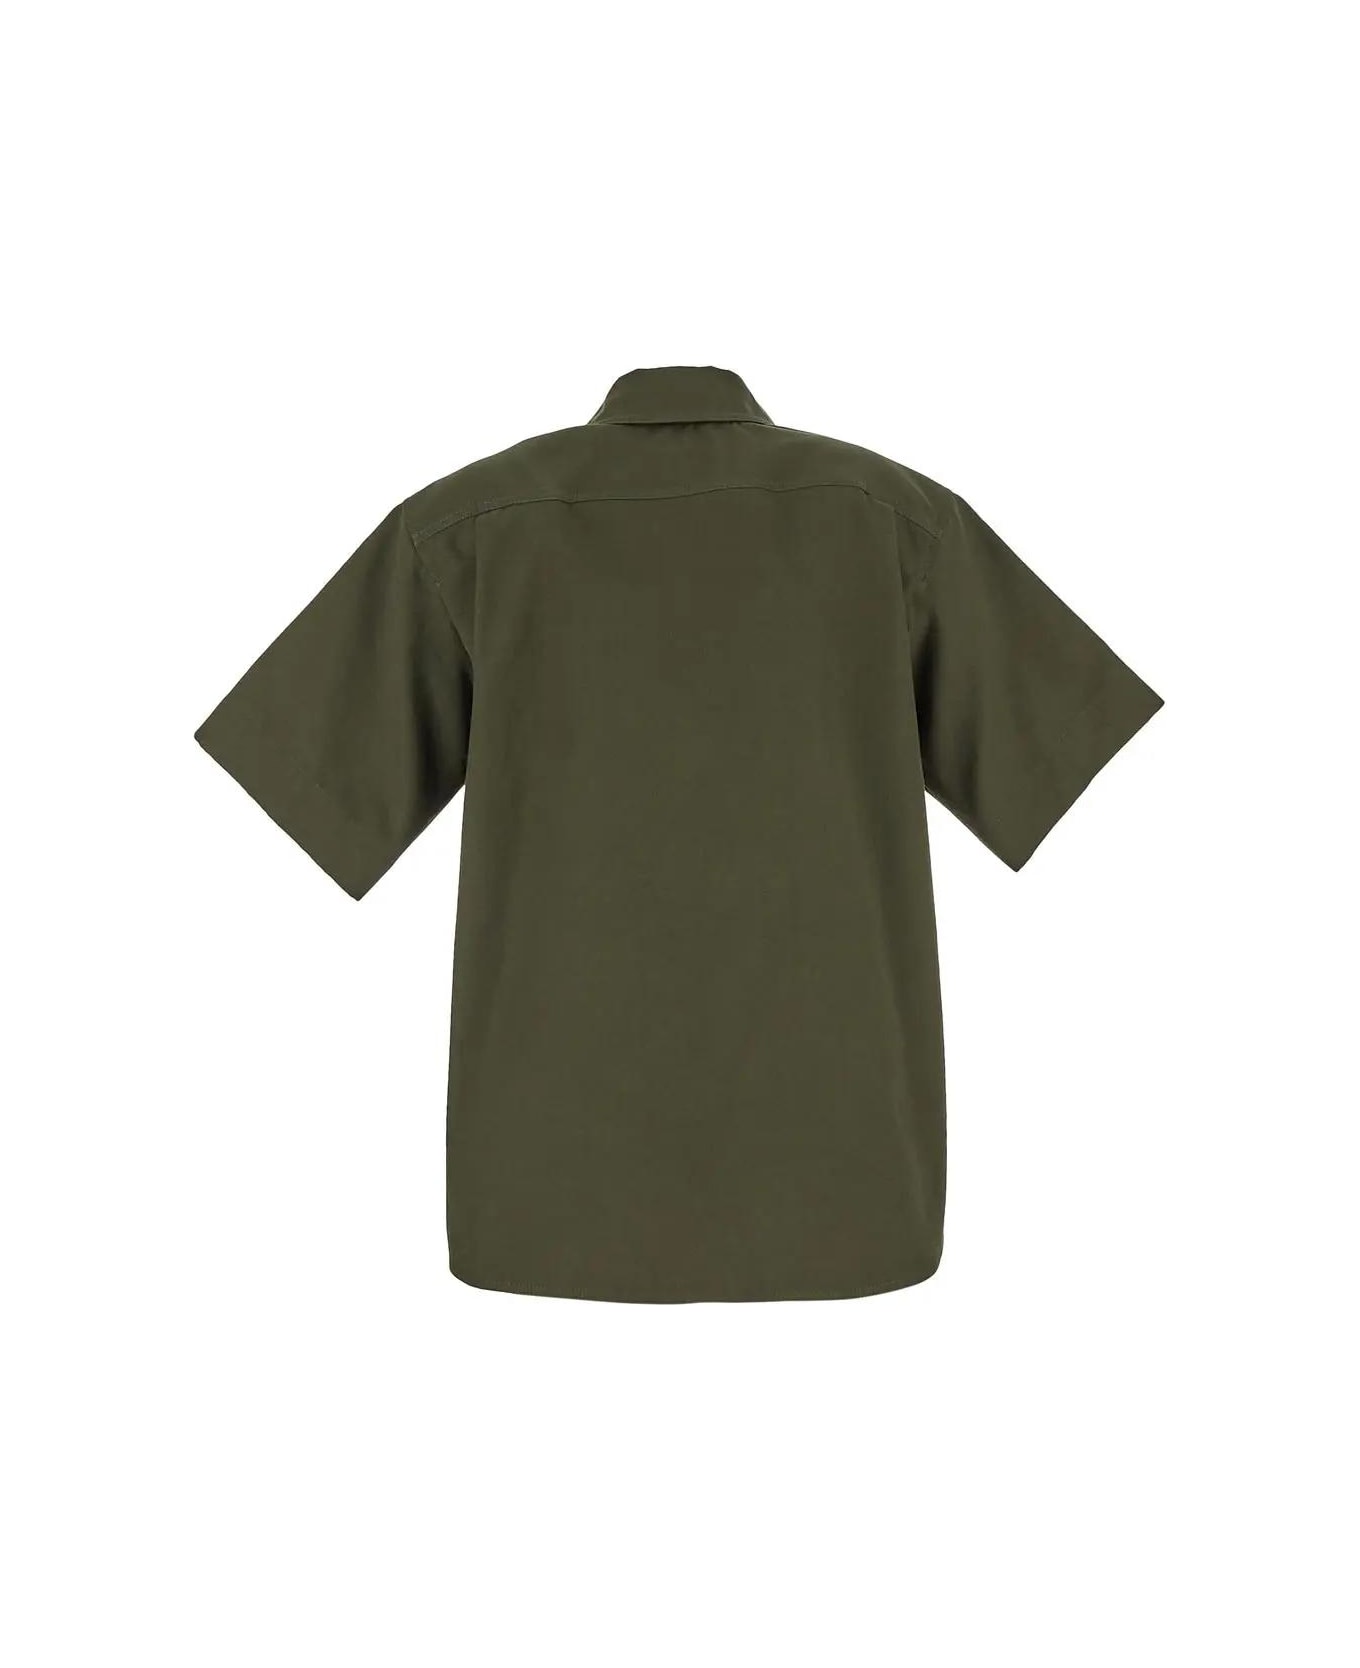 Max Mara Mela Shirt-jacket - MILITARY GREEN シャツ